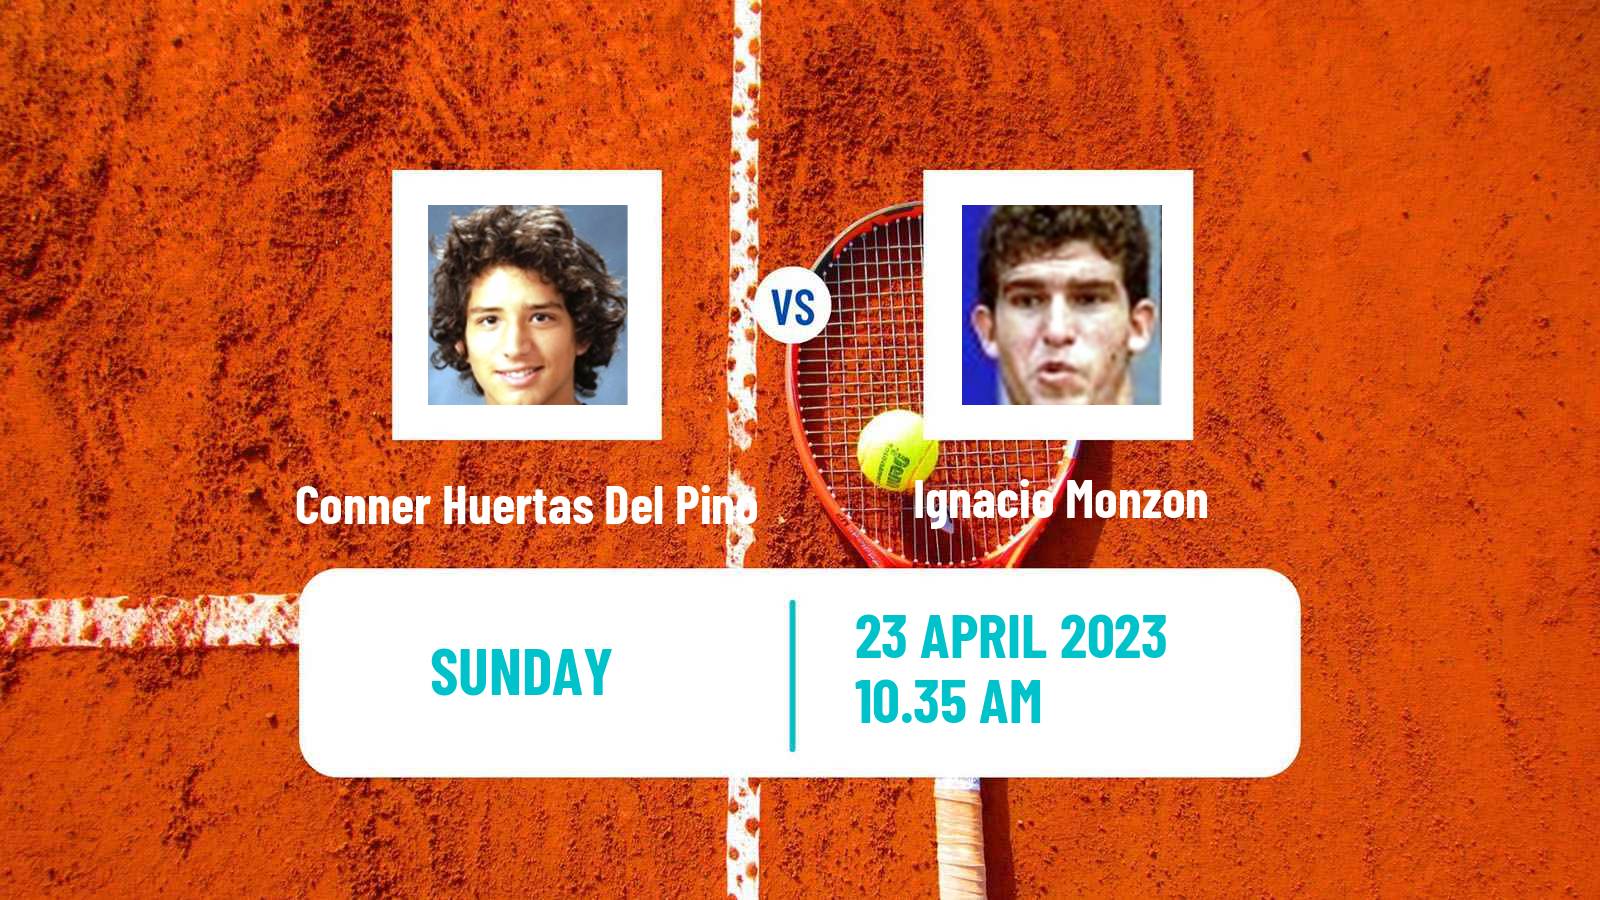 Tennis ATP Challenger Conner Huertas Del Pino - Ignacio Monzon